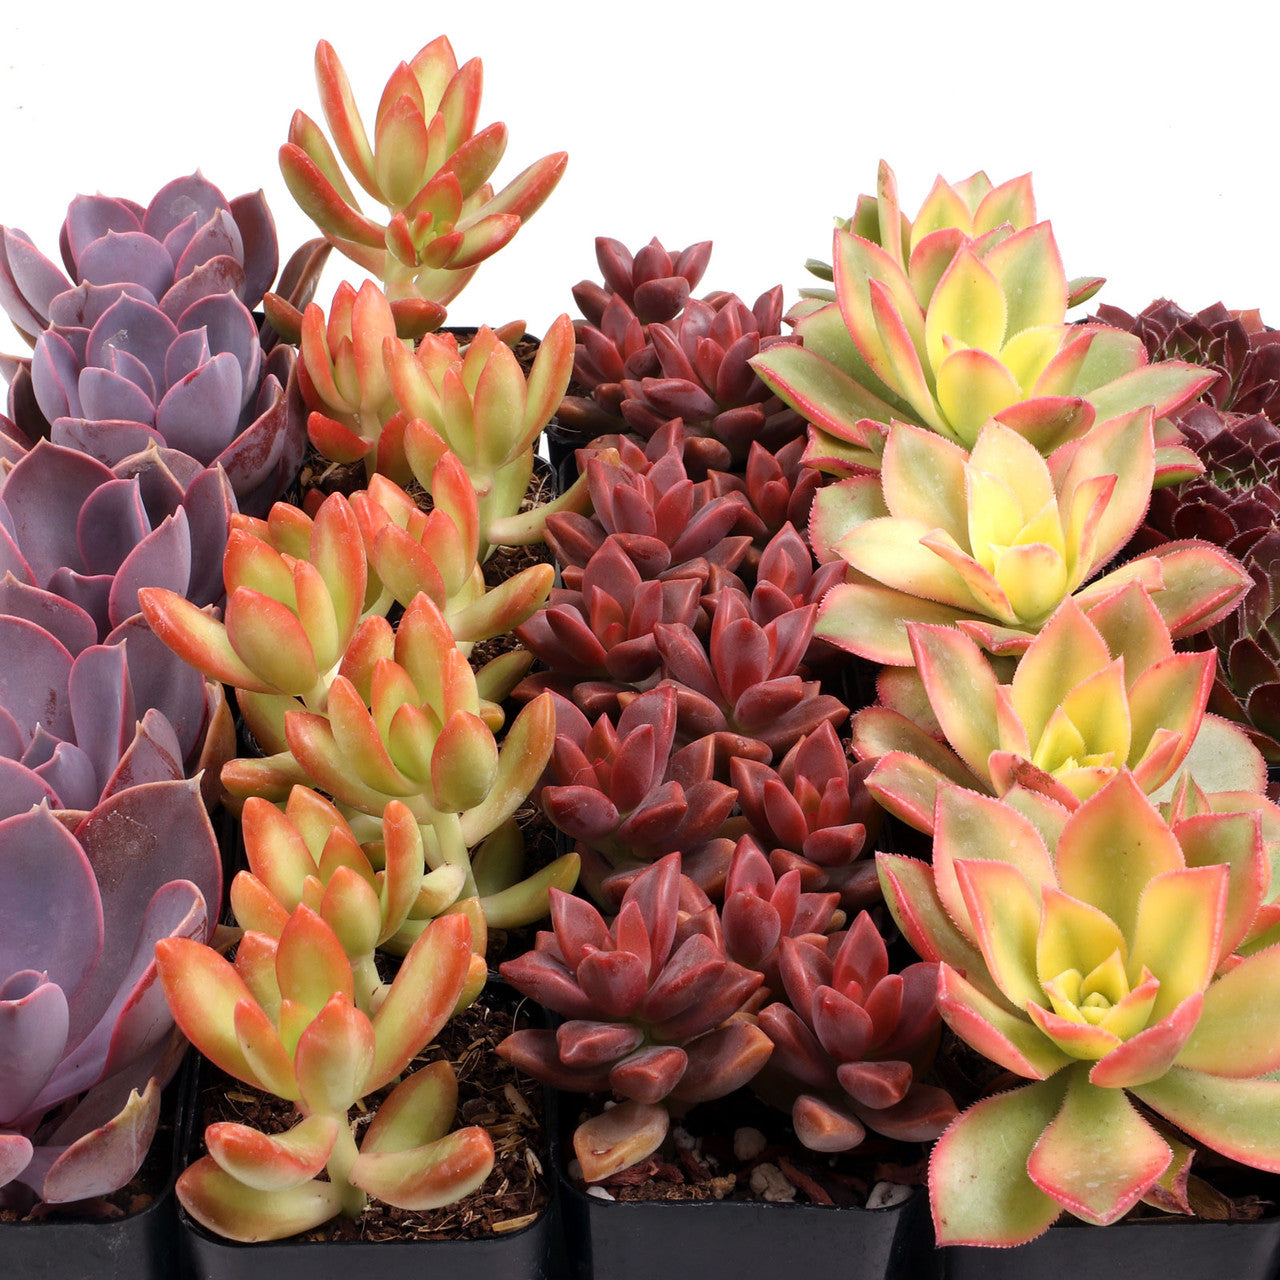 Colorful Succulents 25-Pack - 5 Varieties - 2" Pots